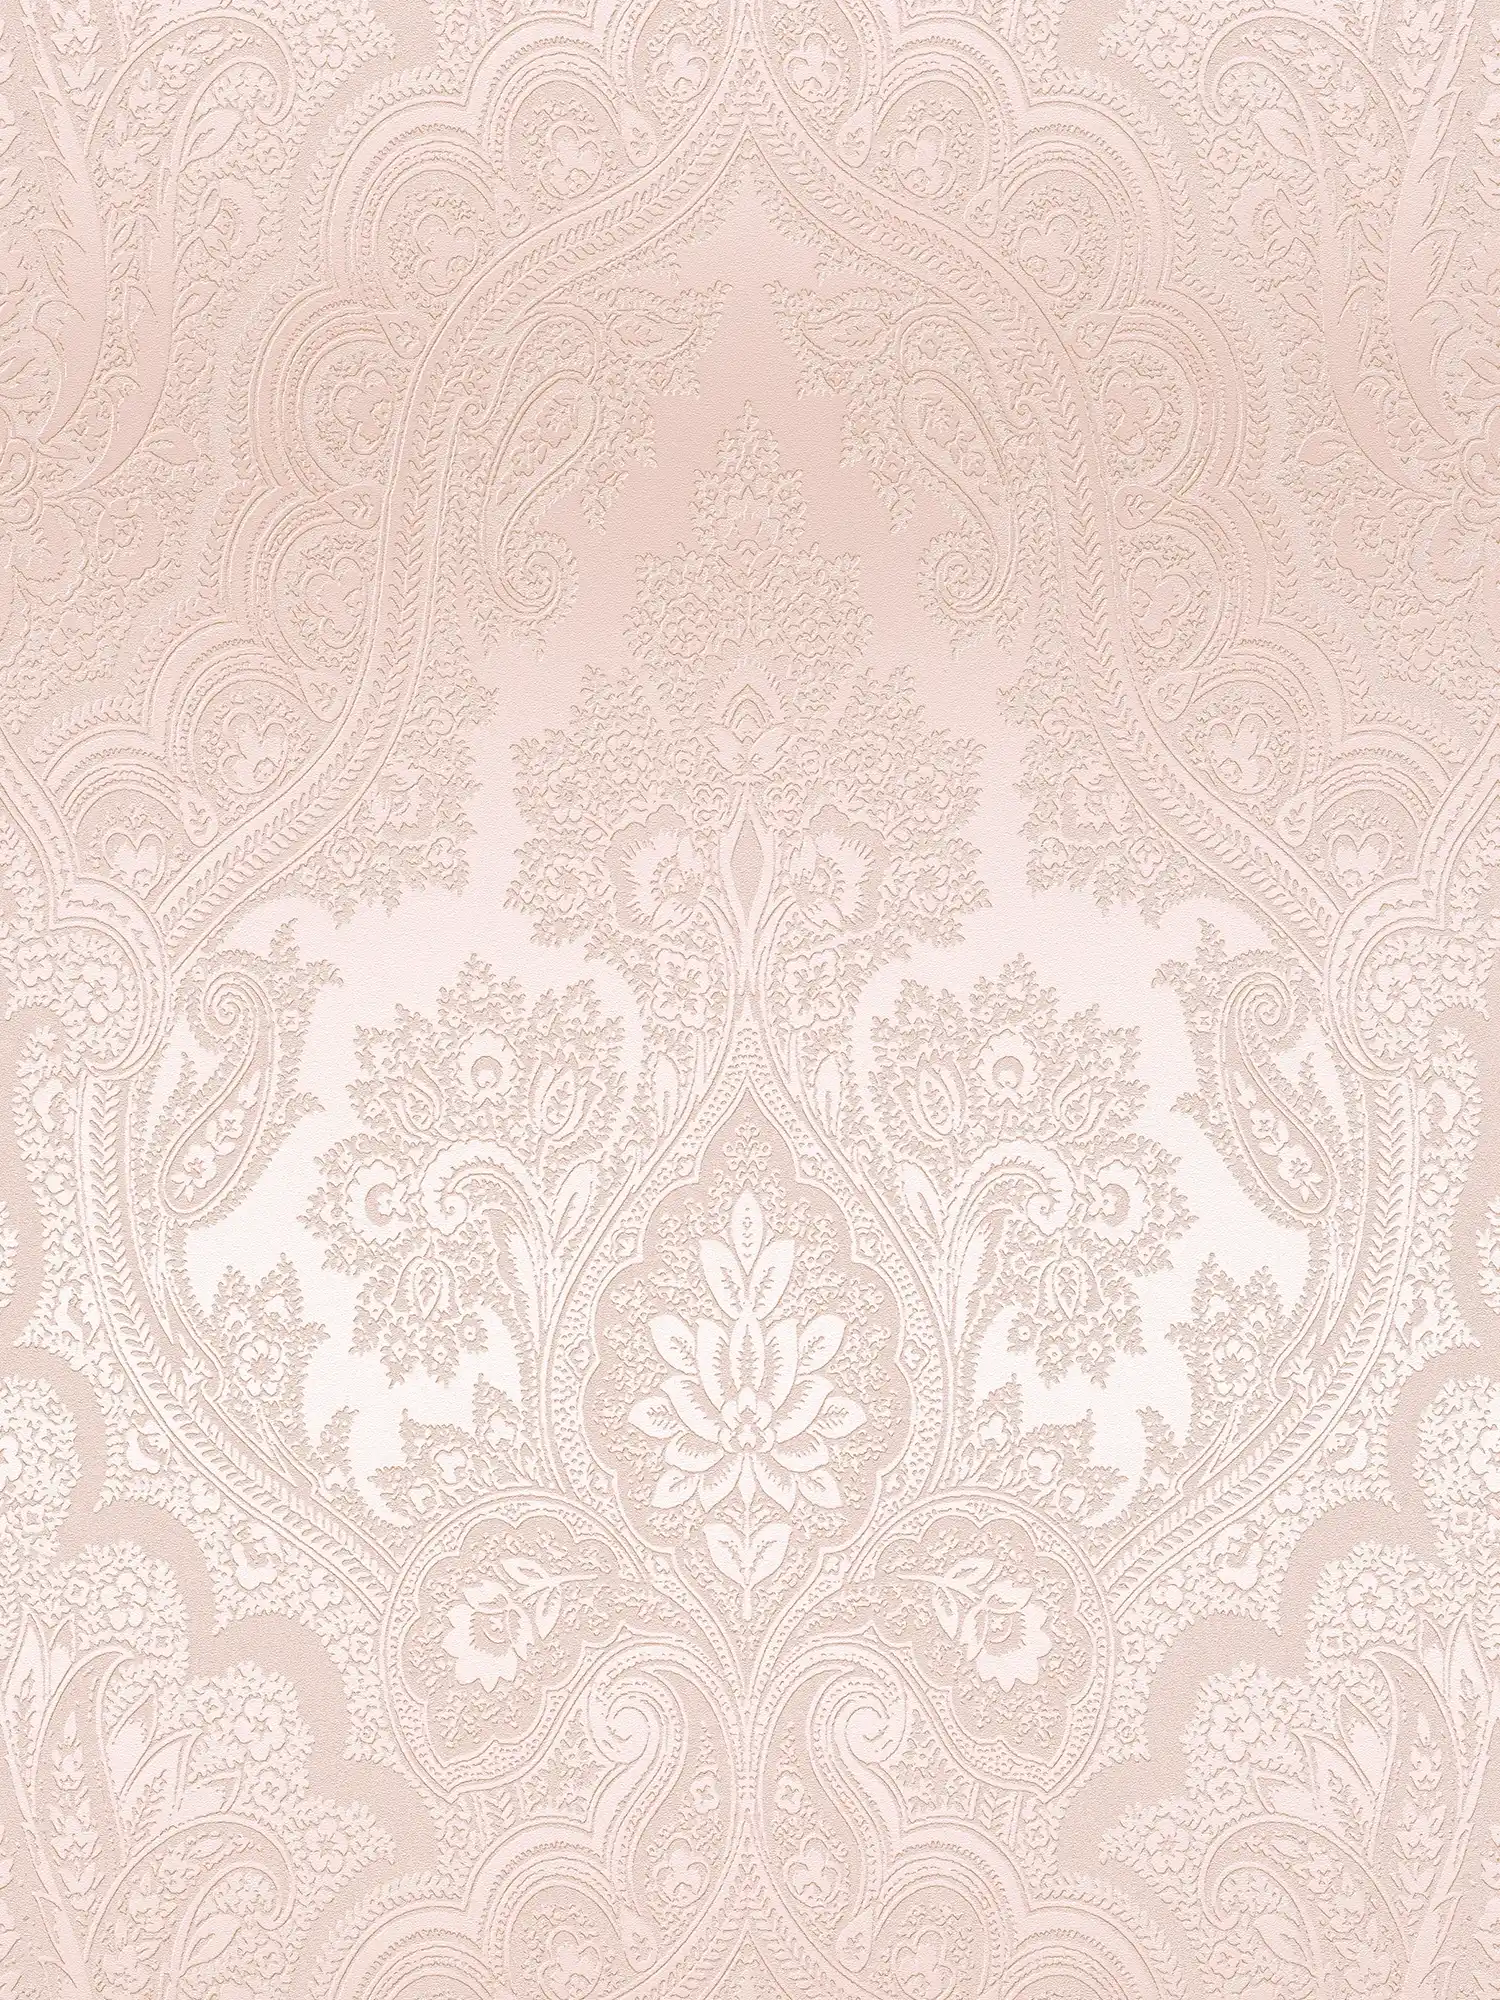 Boho behang roze met ornament patroon - metallic, roze
